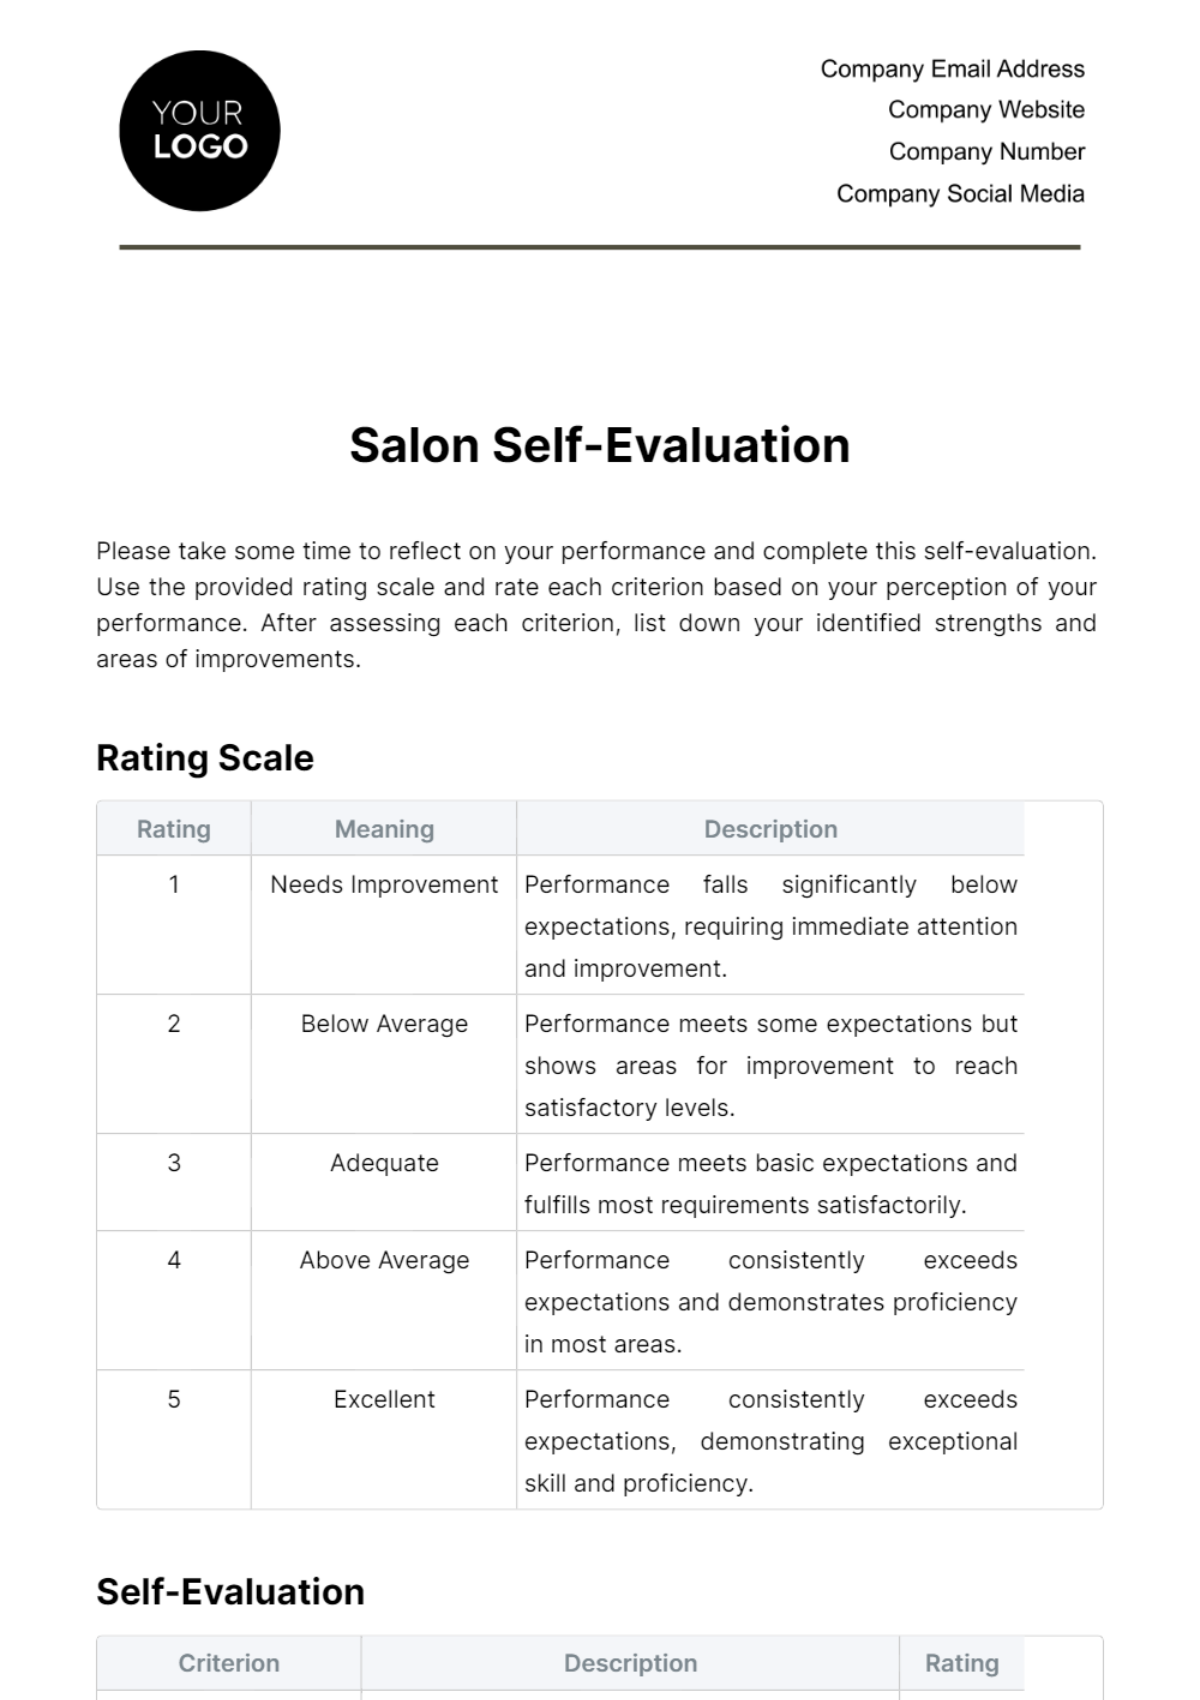 Salon Self-Evaluation Template